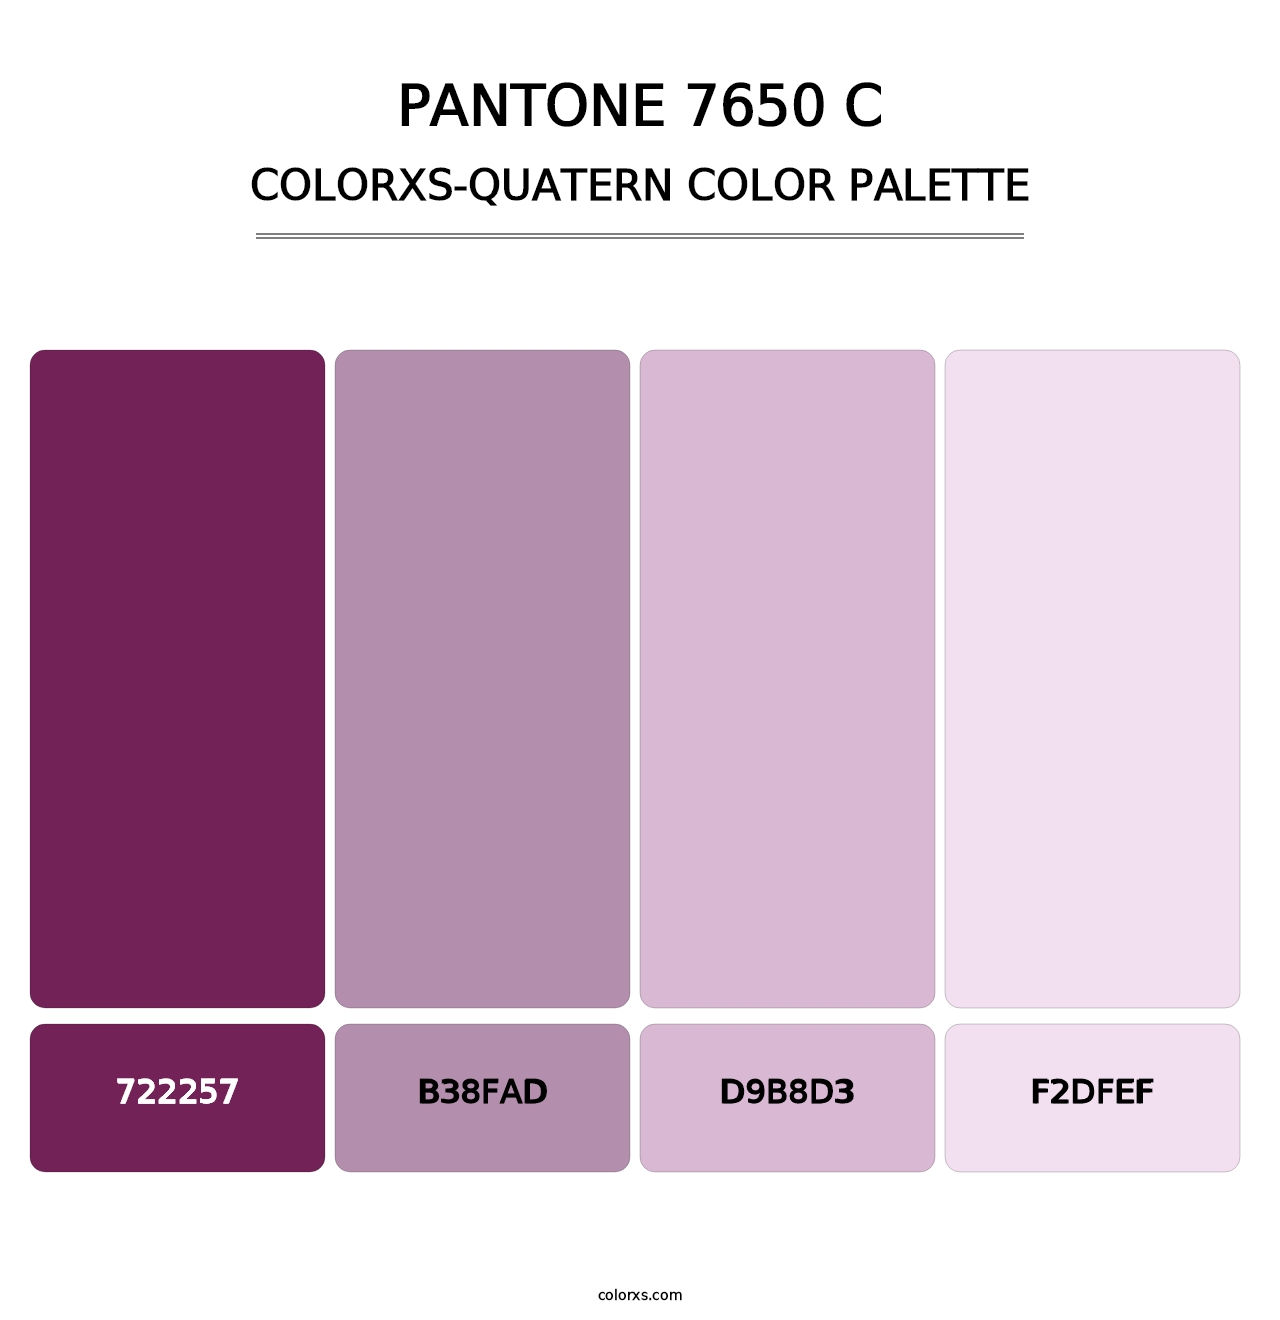 PANTONE 7650 C - Colorxs Quatern Palette